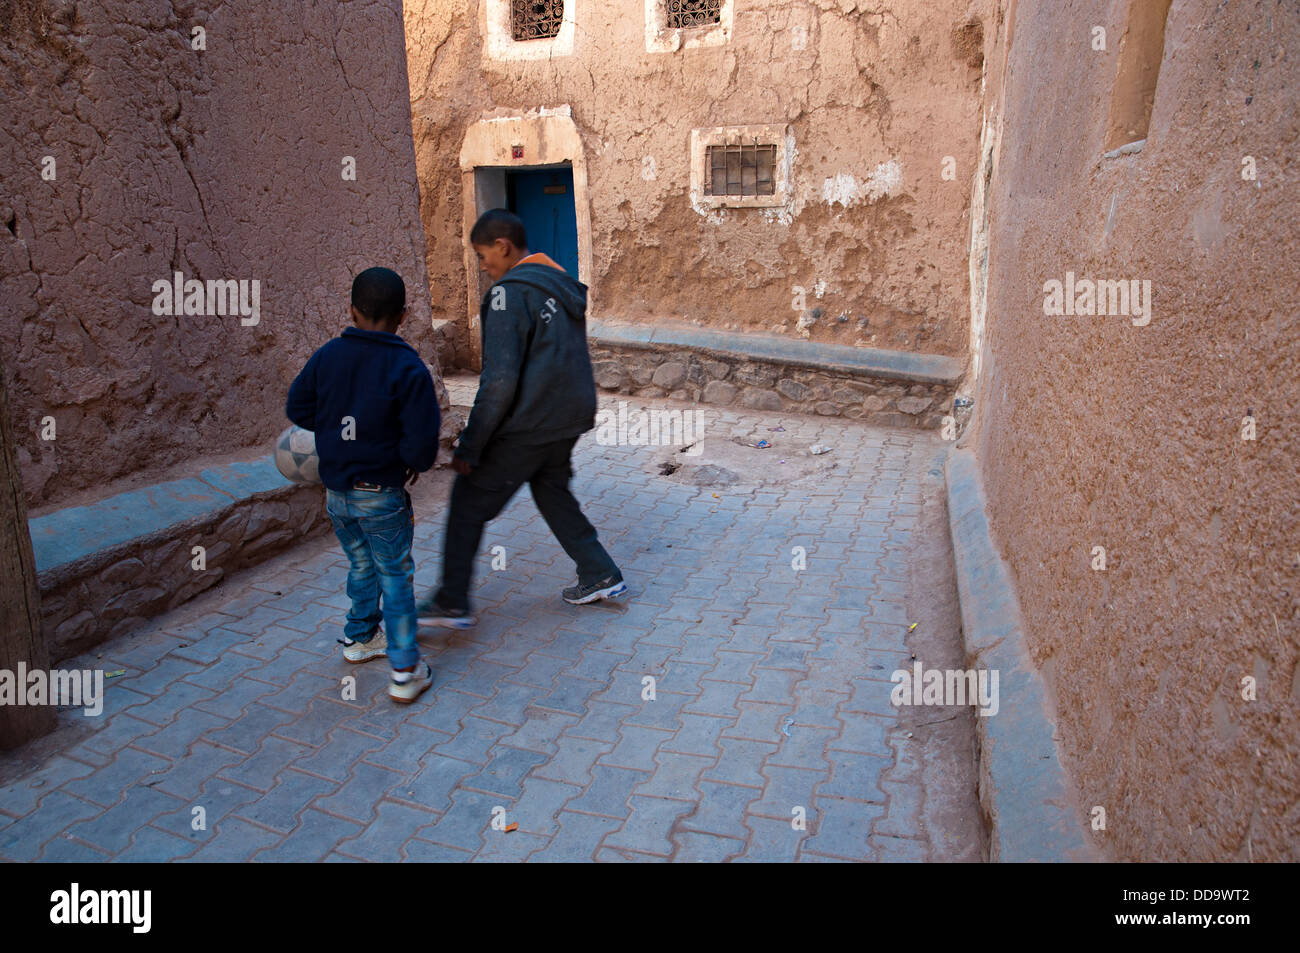 Deux enfants jouant au football dans les rues de la mellah (quartier juif), Ouarzazate, Maroc Banque D'Images